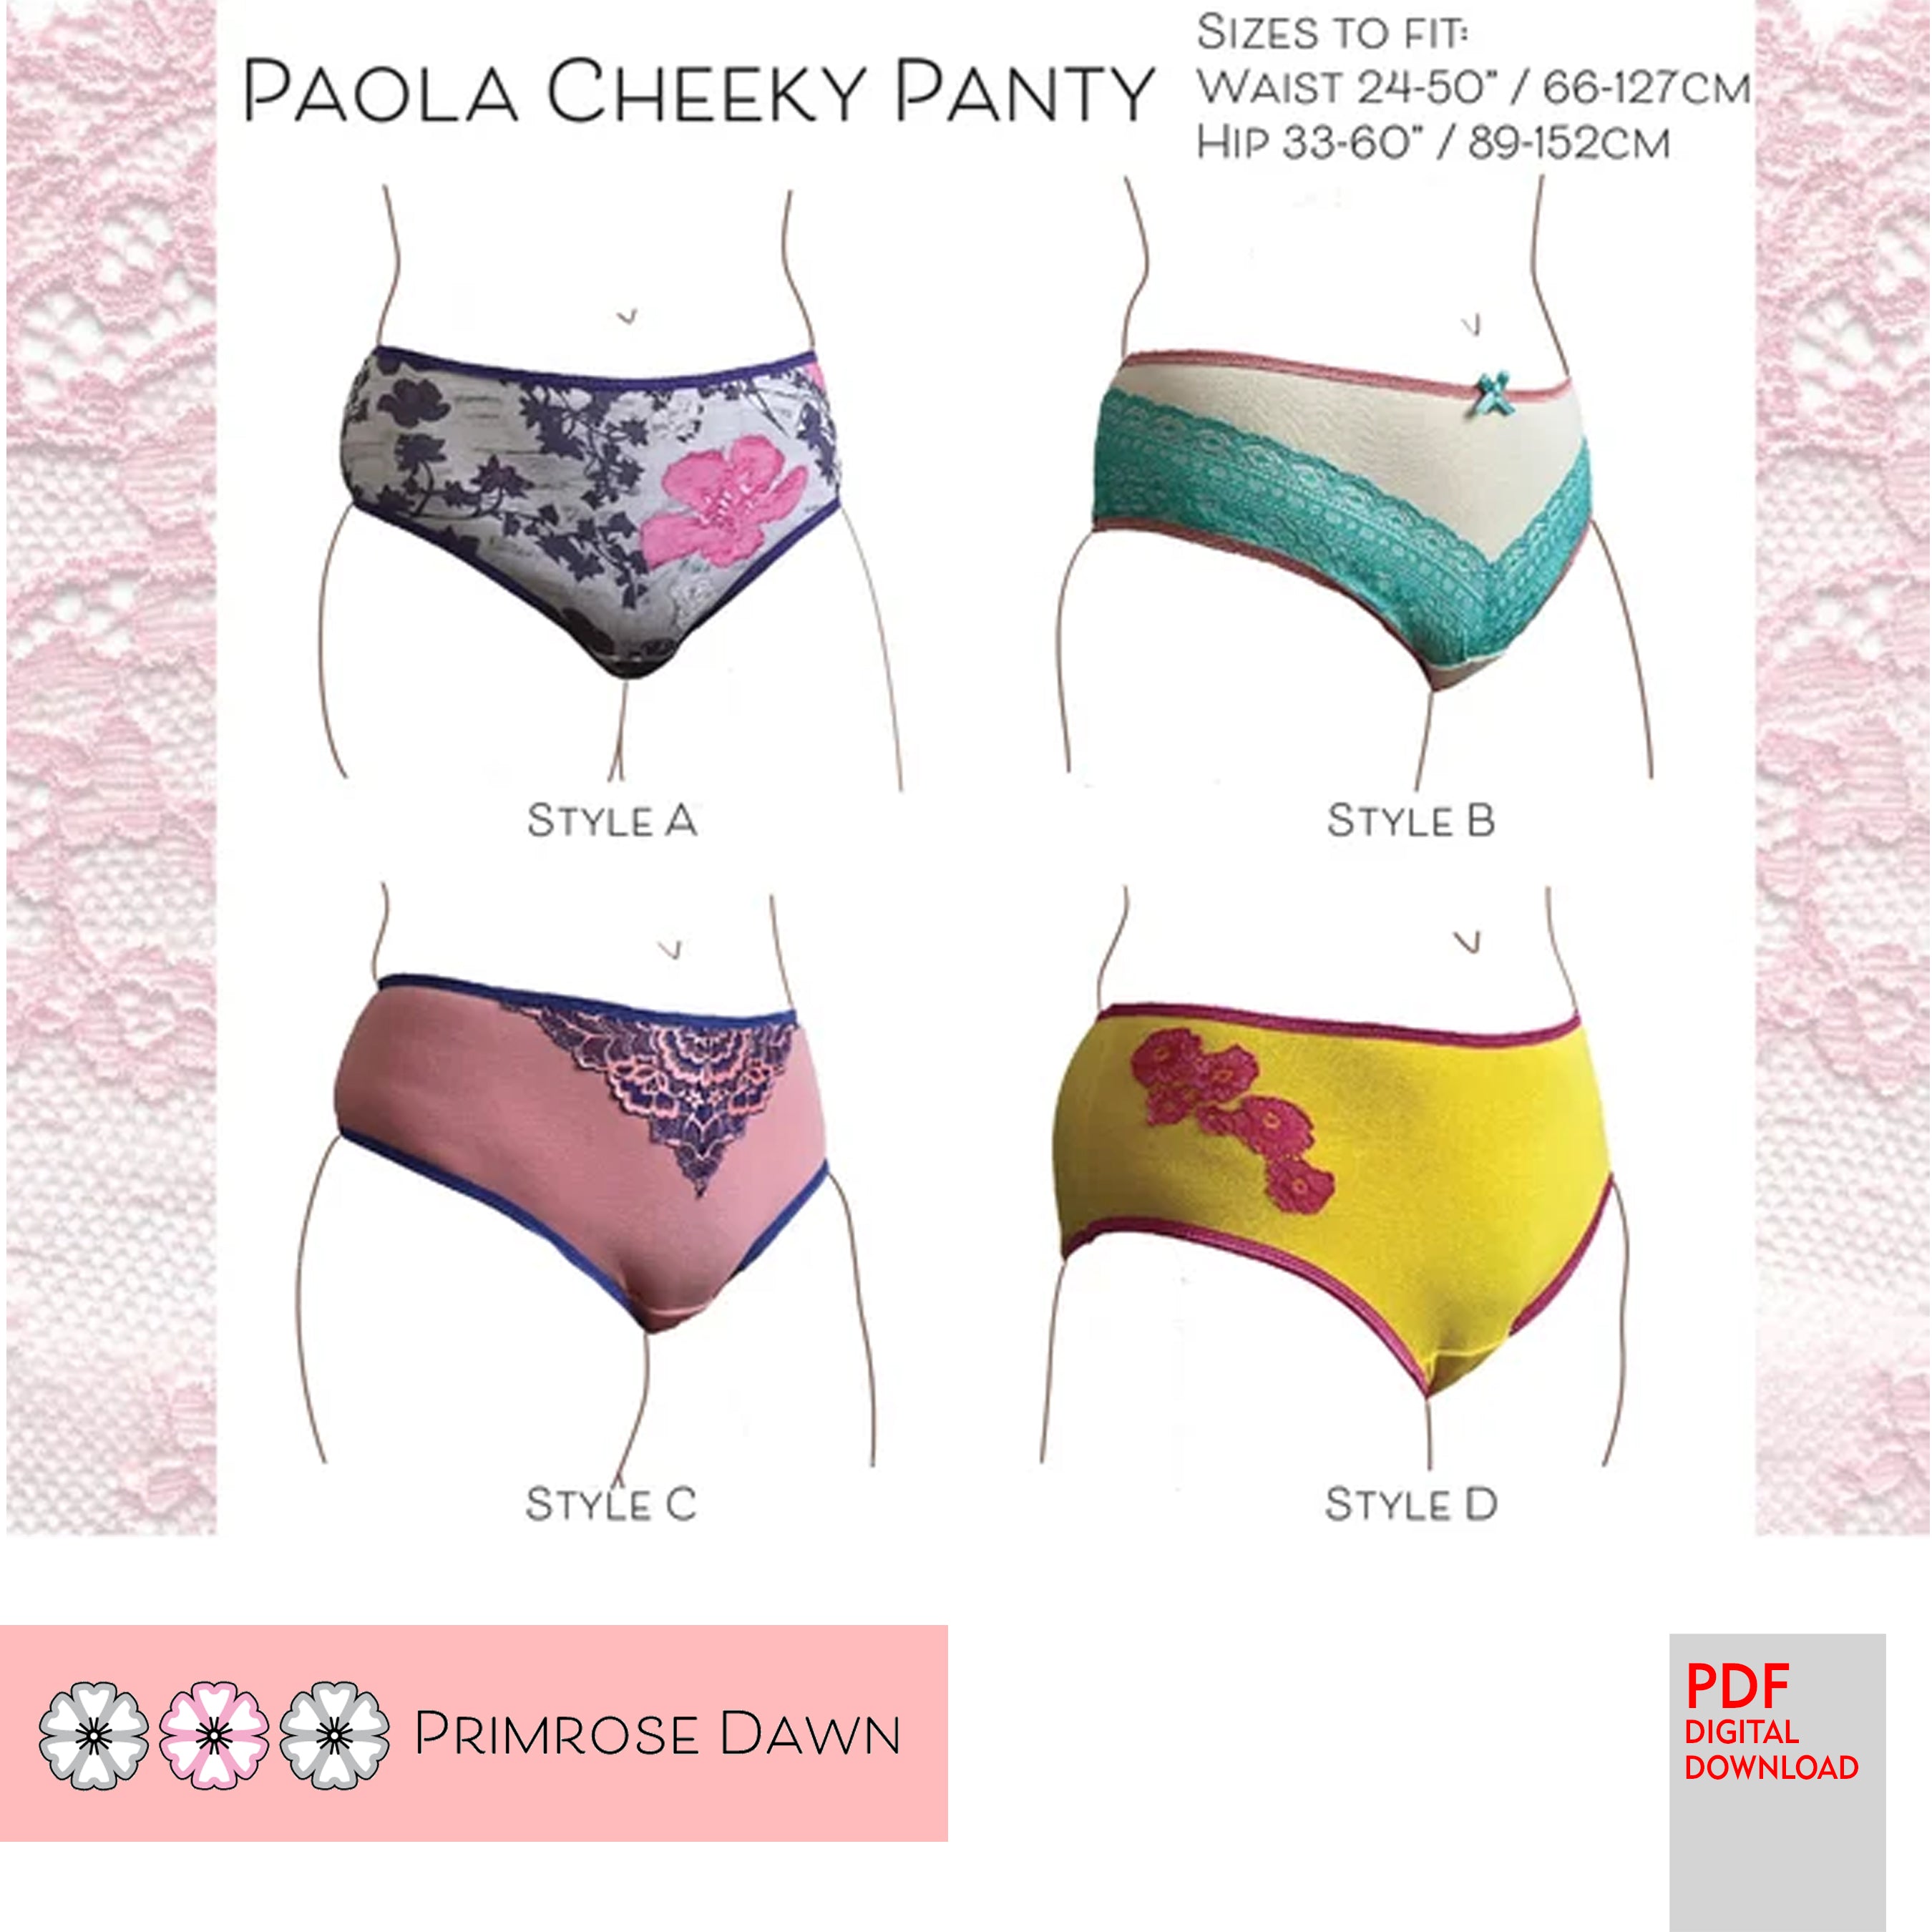 PDF Primrose Dawn Sewing Pattern- Paola Cheeky Panty